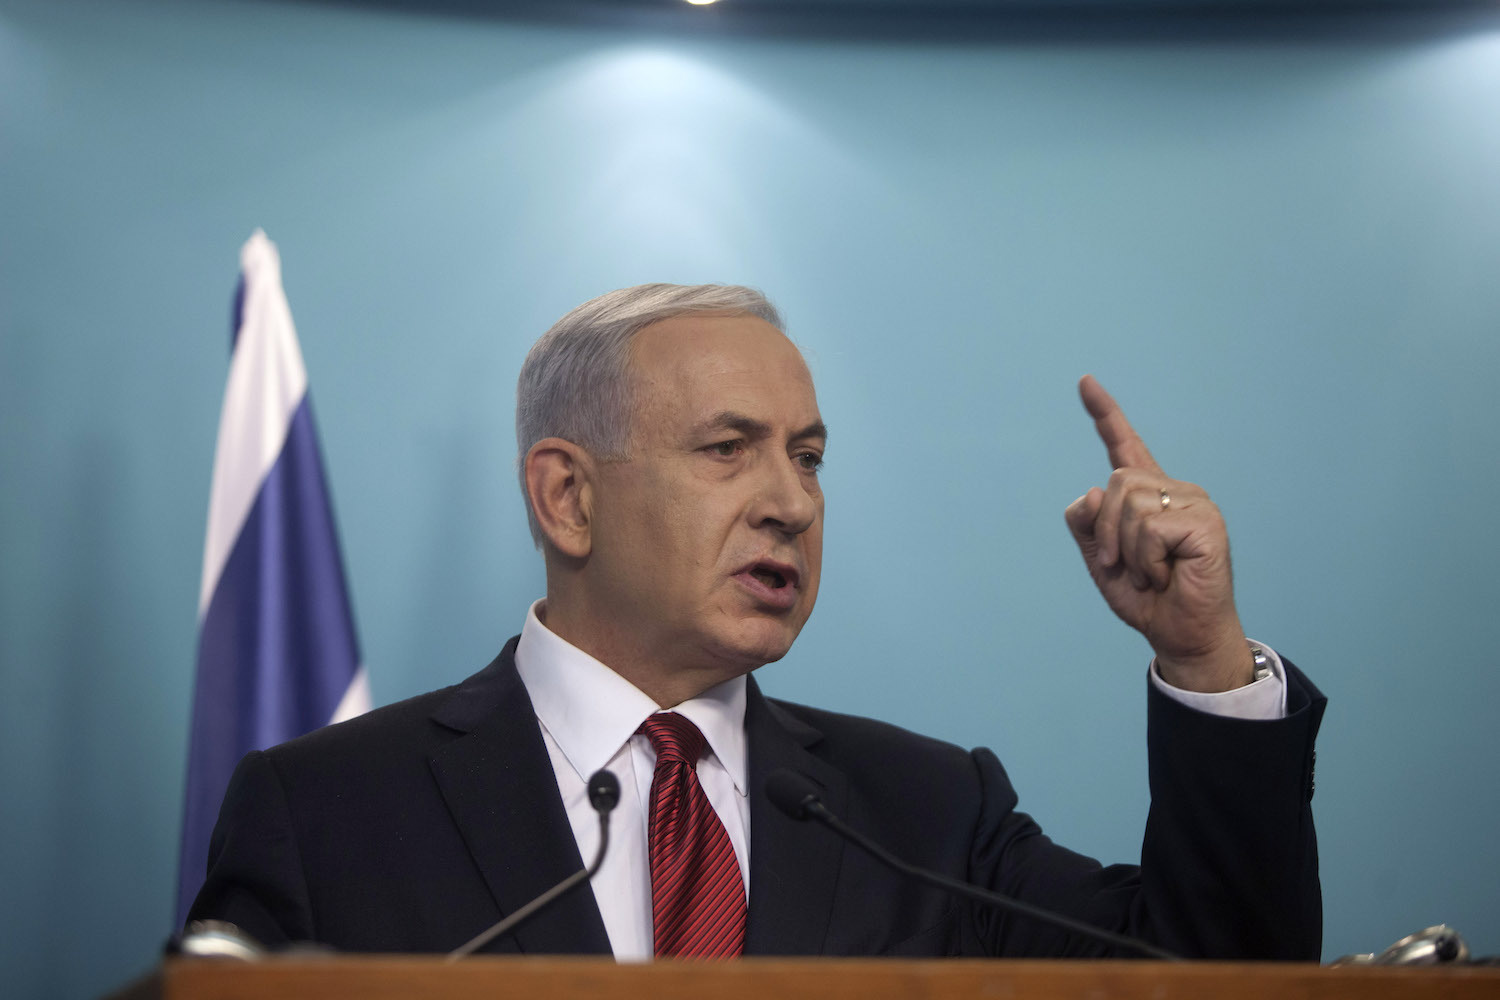 Ex-Mossad Directors criticize Netanyahu